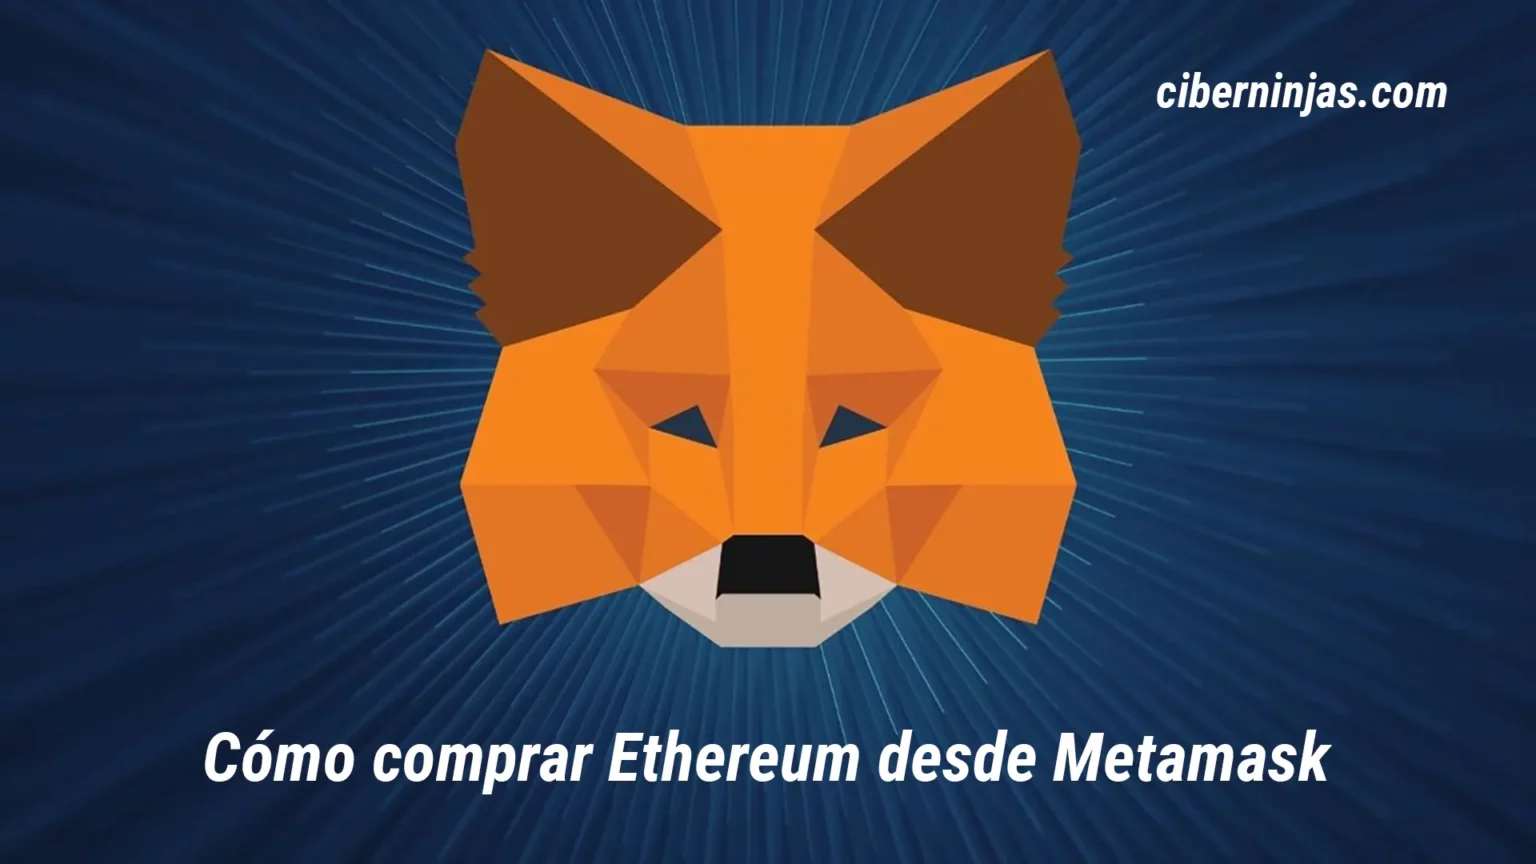 ¿Cómo comprar Ethereum desde Metamask?